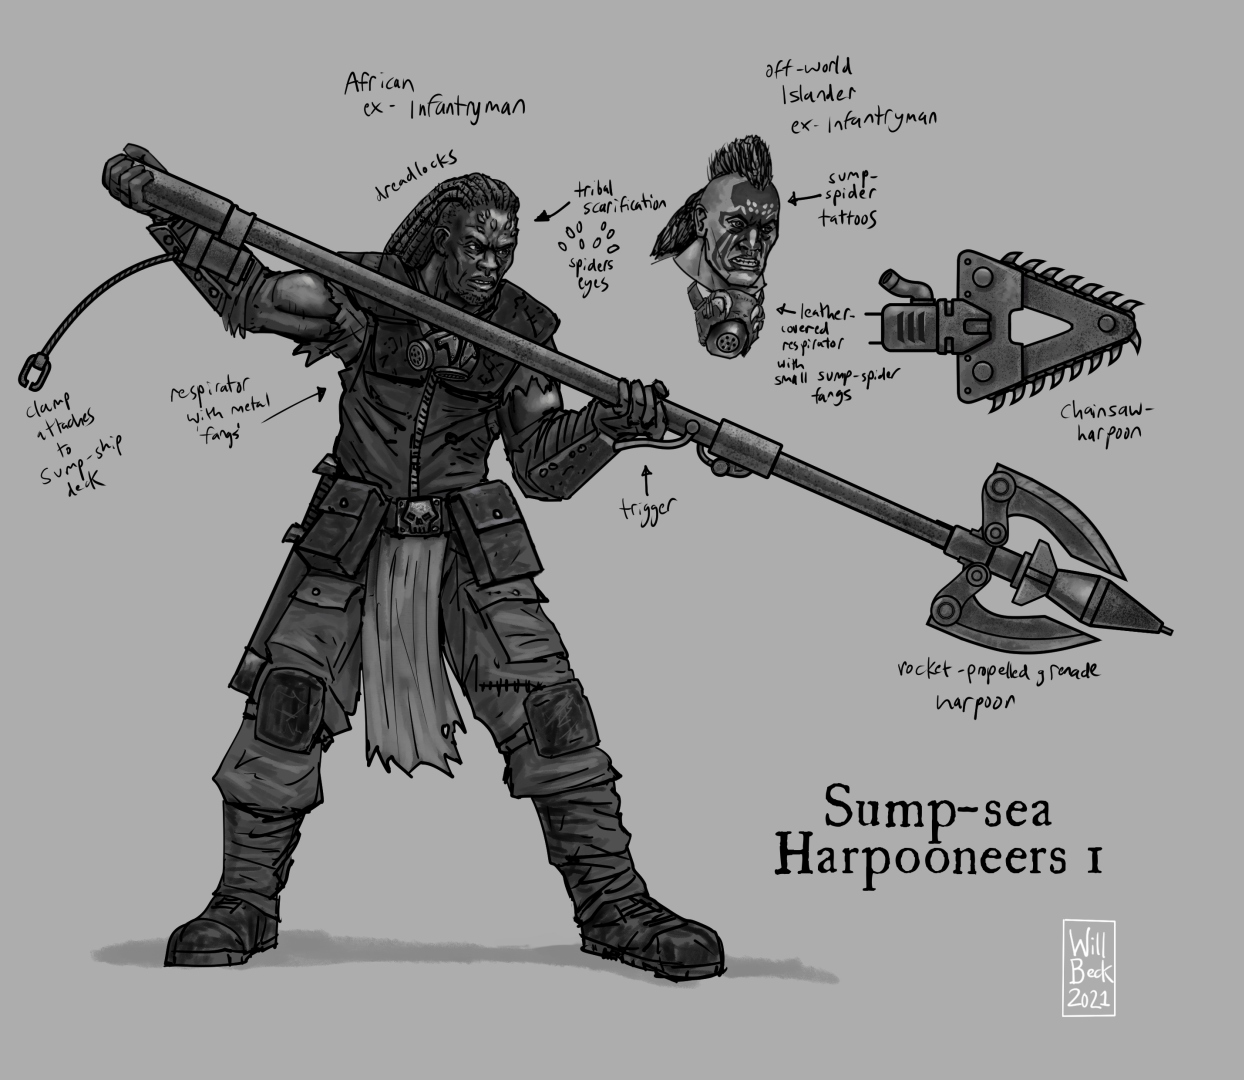 Sump-sea Harpooneers